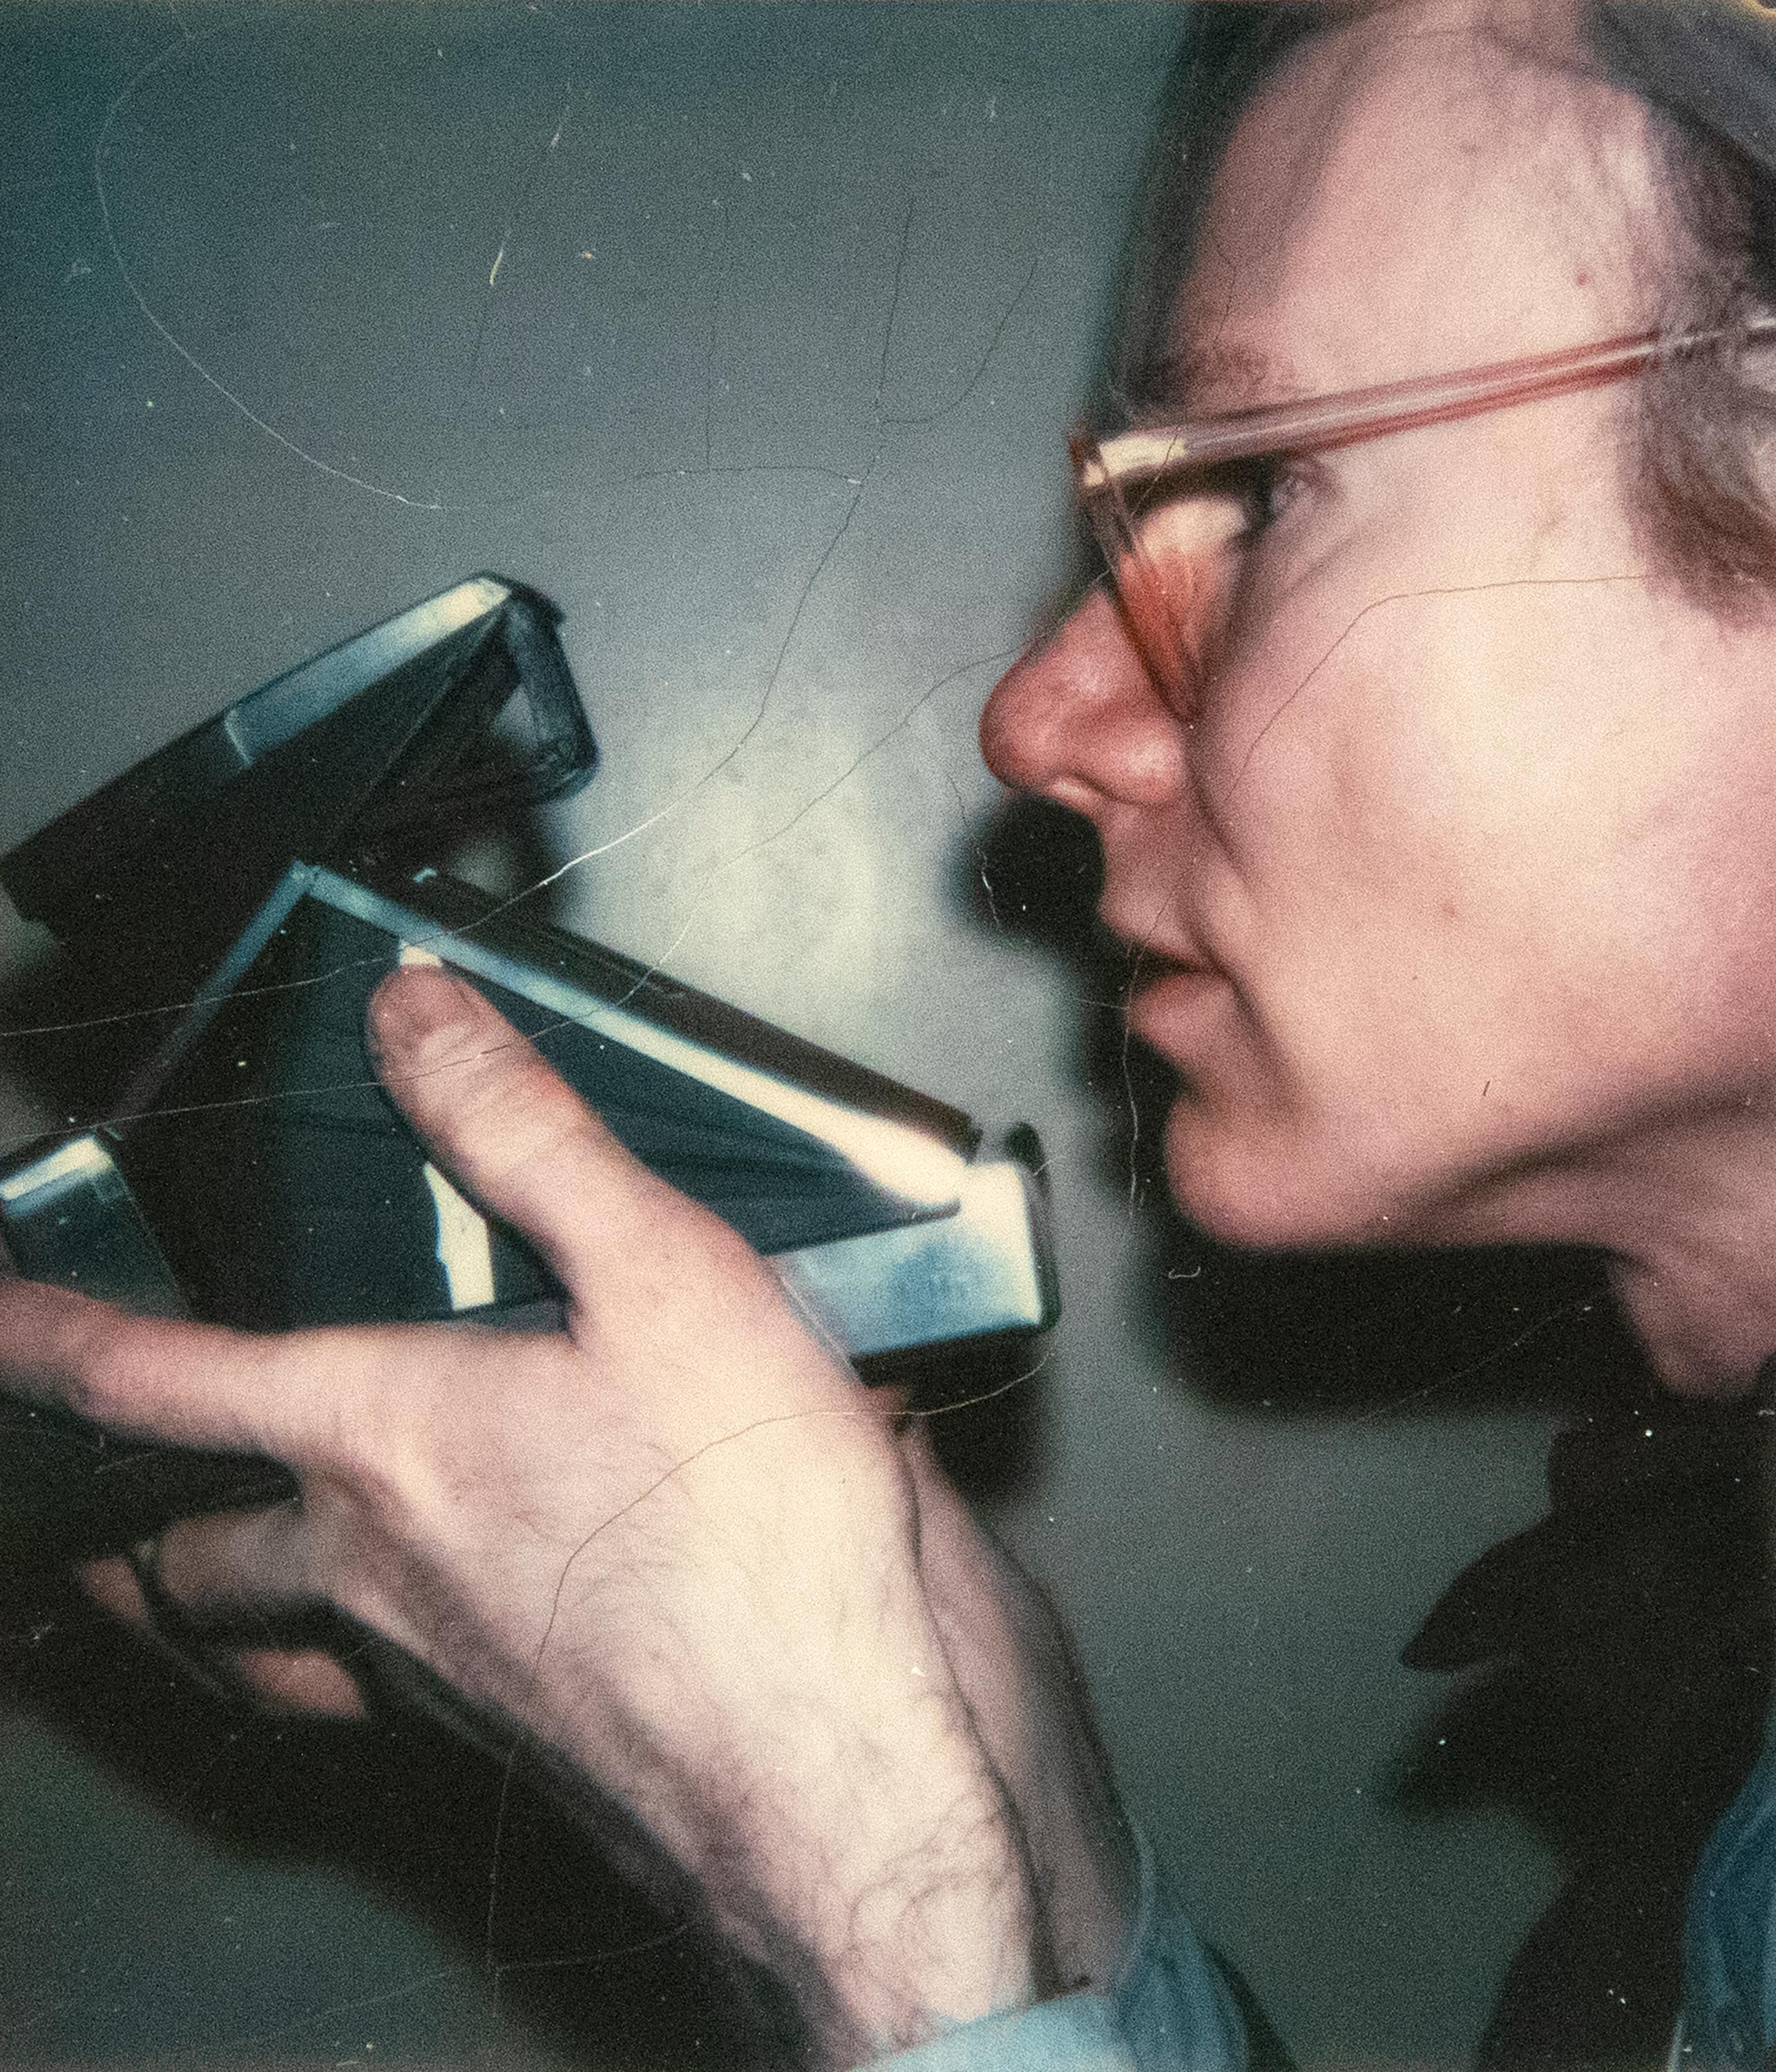 Andy Warhol Portrait Photograph - Self-Portrait